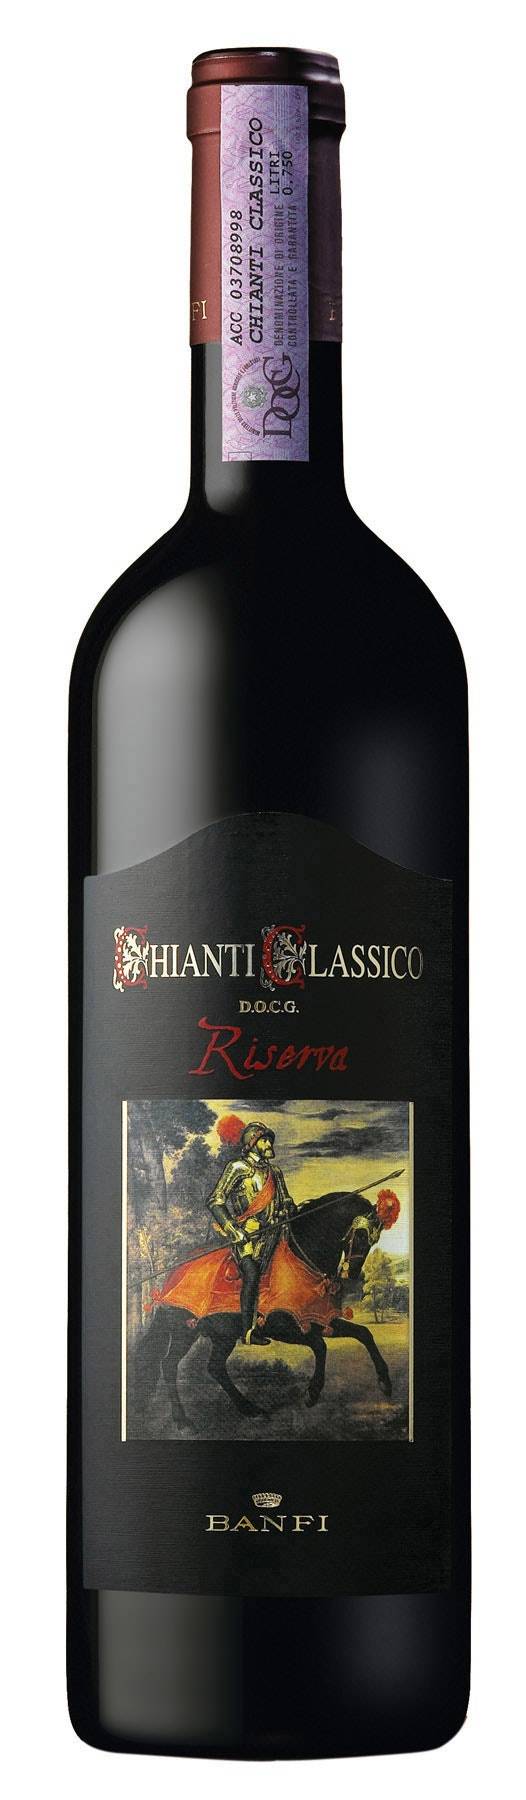 Banfi Chianti Classico Italy Wine (750 ml)